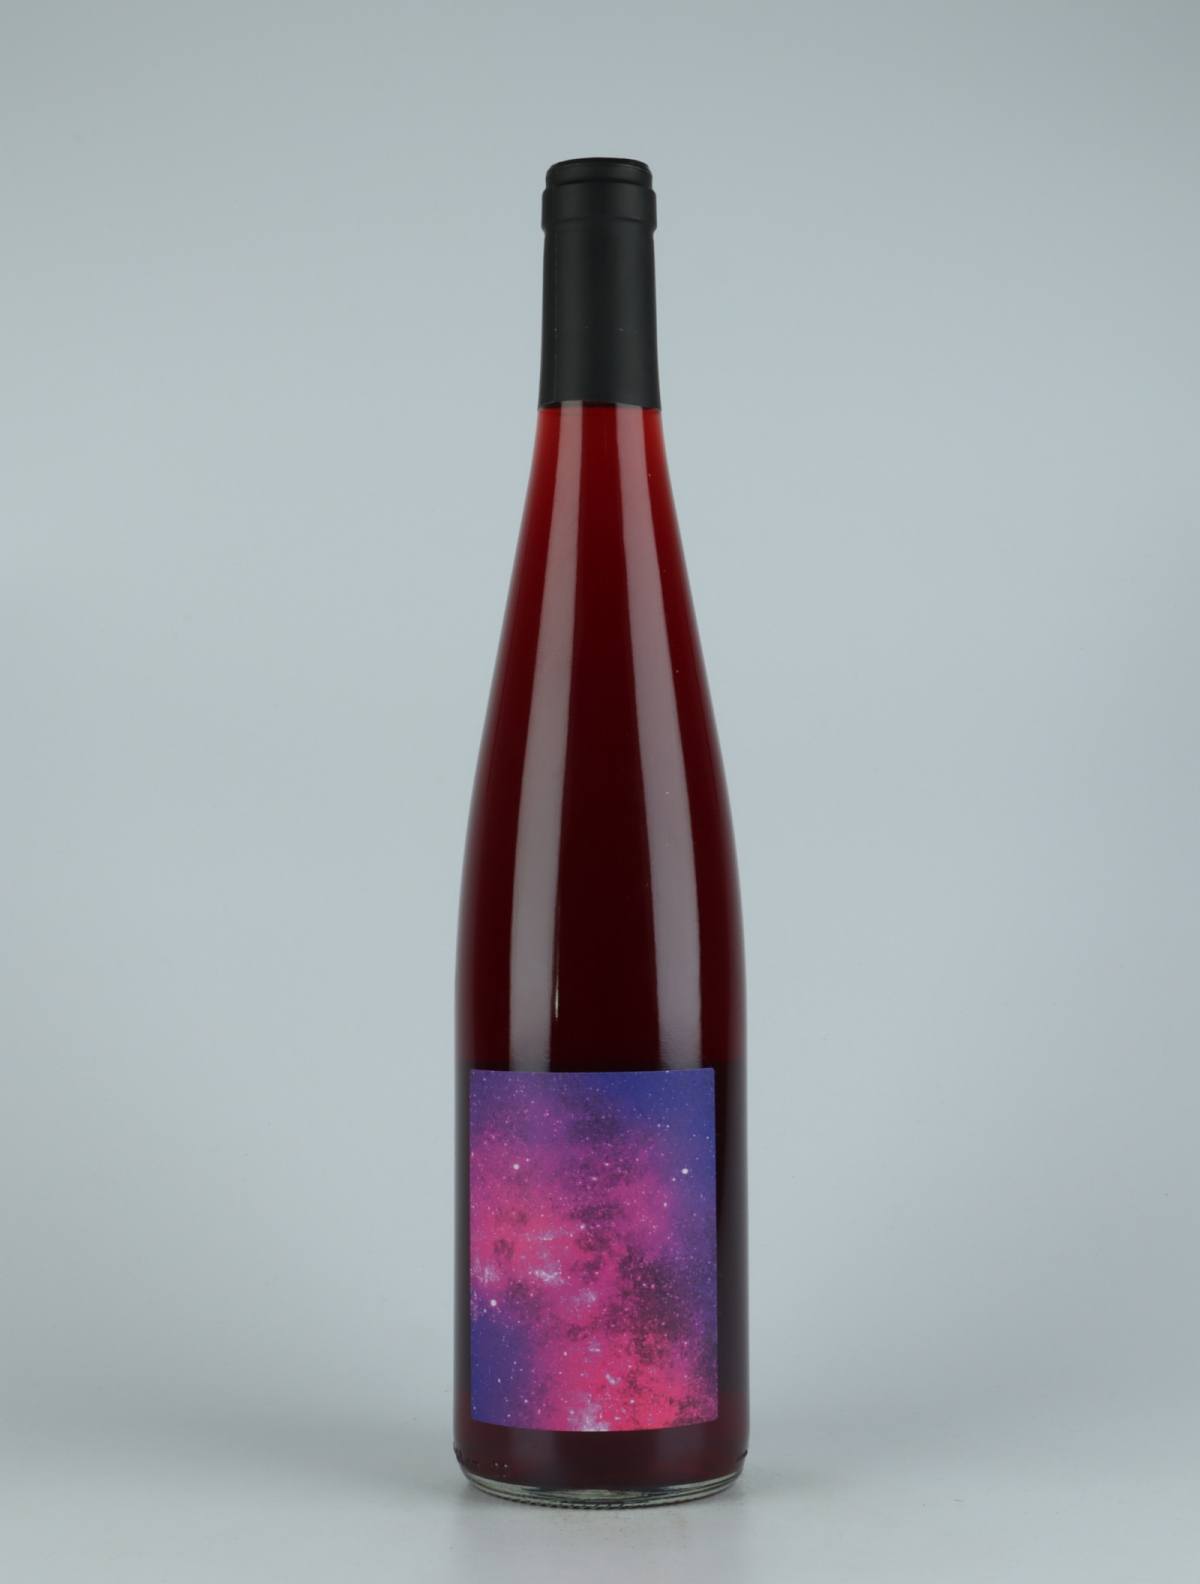 En flaske 2020 Ultra Violet Rødvin fra Les Vins Pirouettes, Alsace i Frankrig